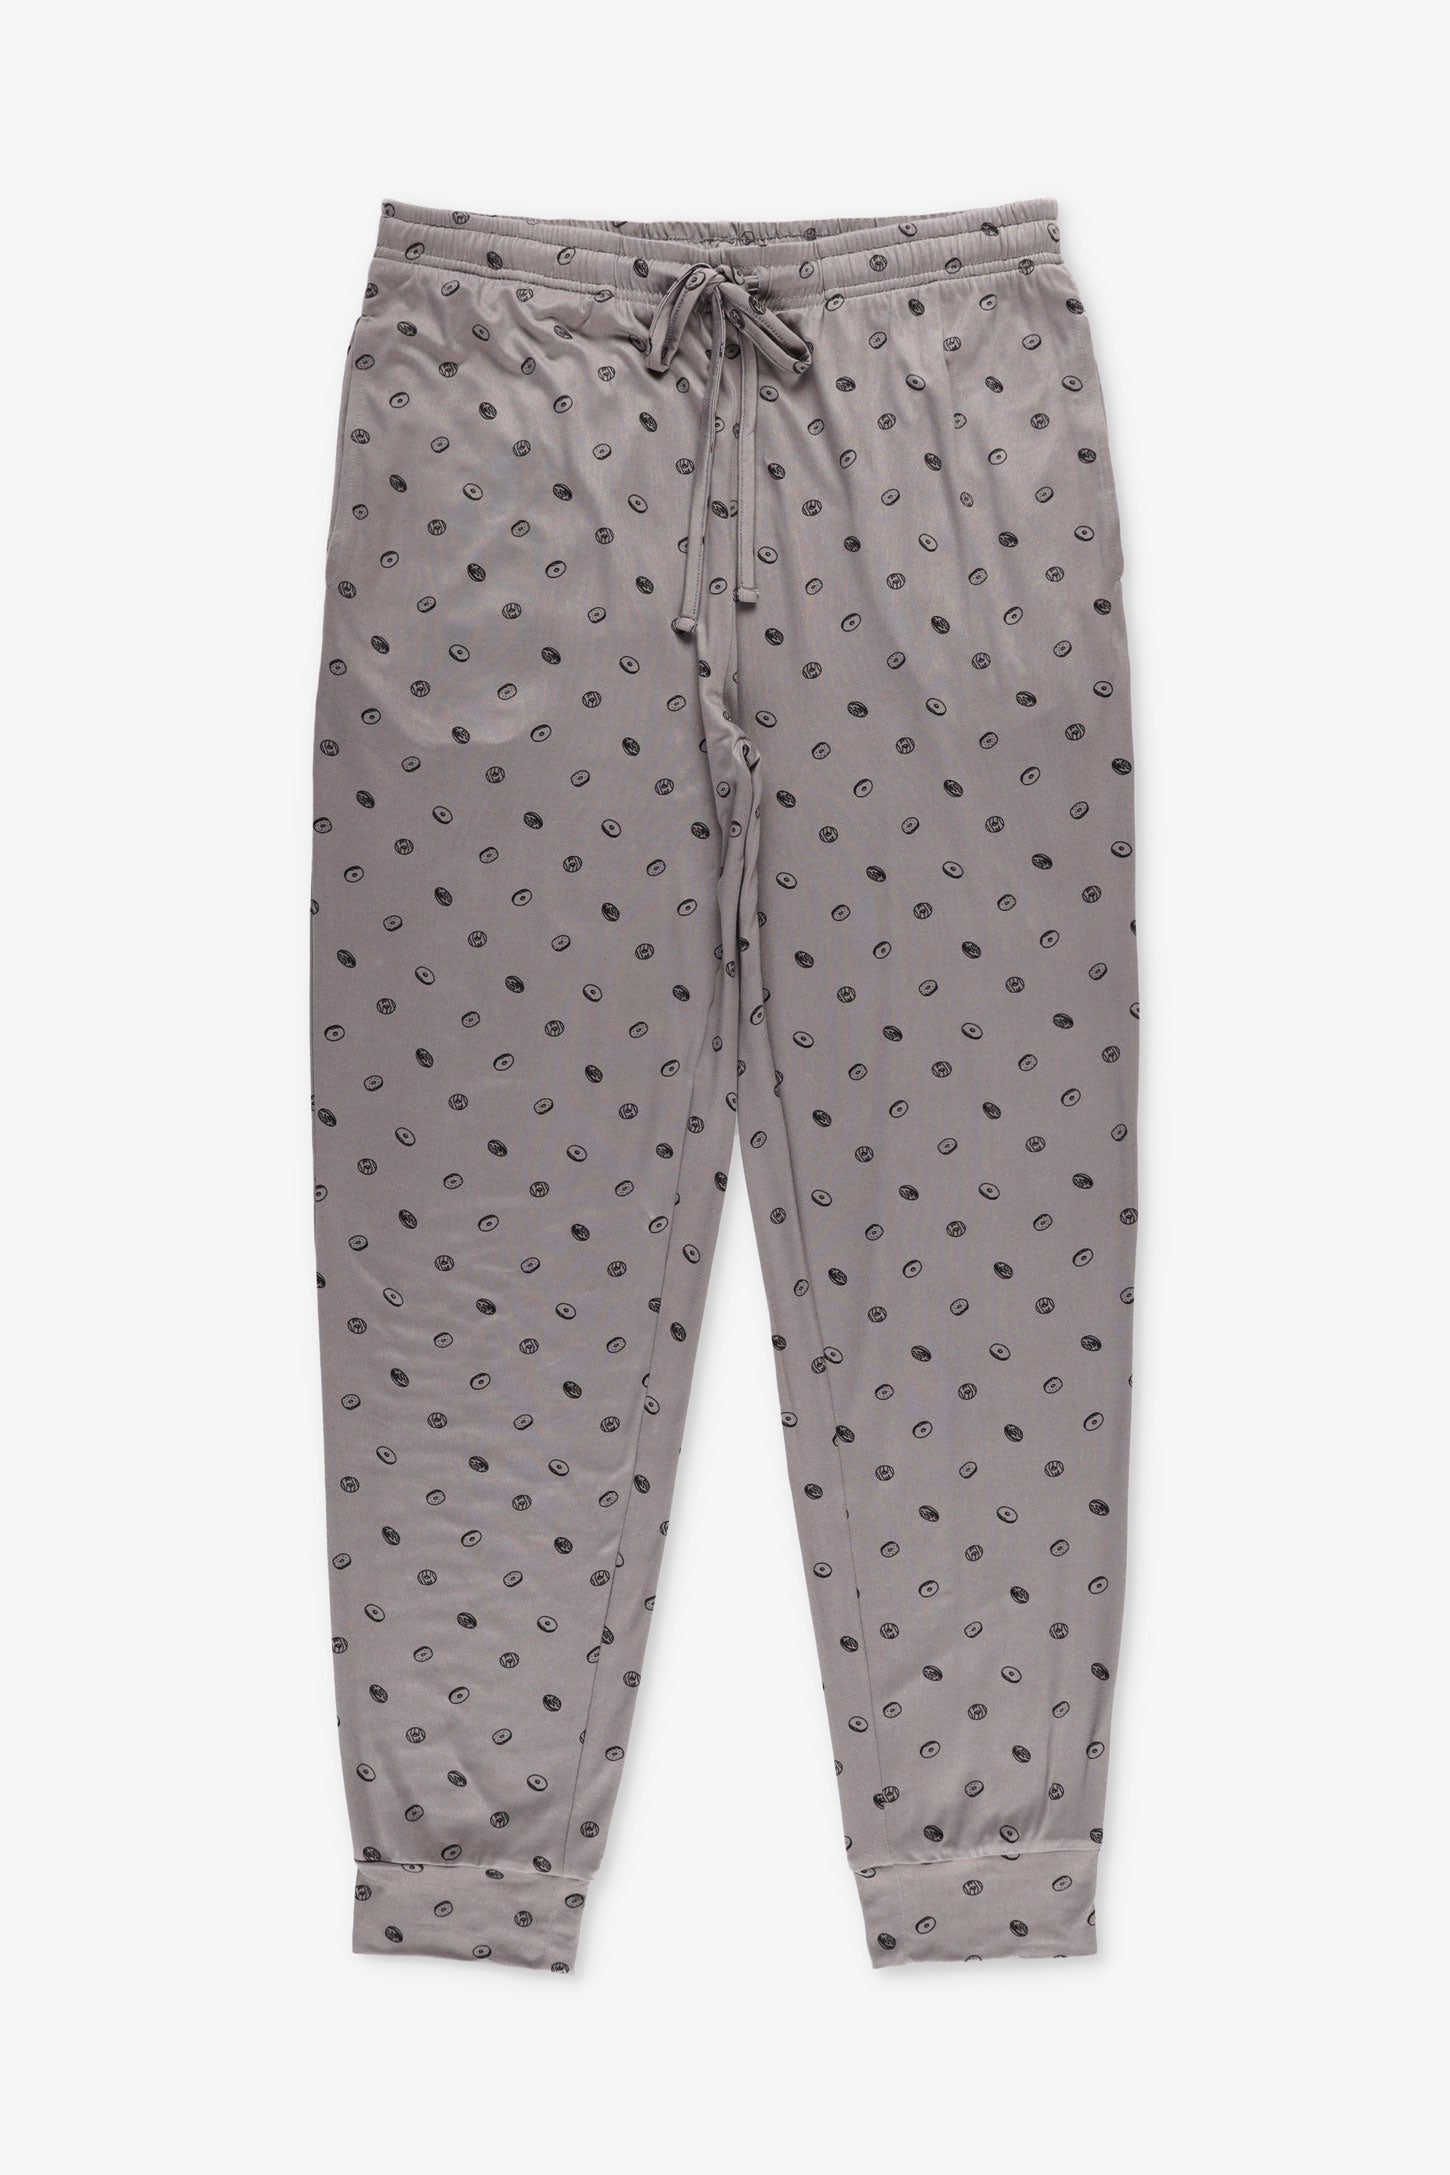 Duos futés, Pantalon pyjama en Moss, 2/50$ - Homme && GRIS MULTI